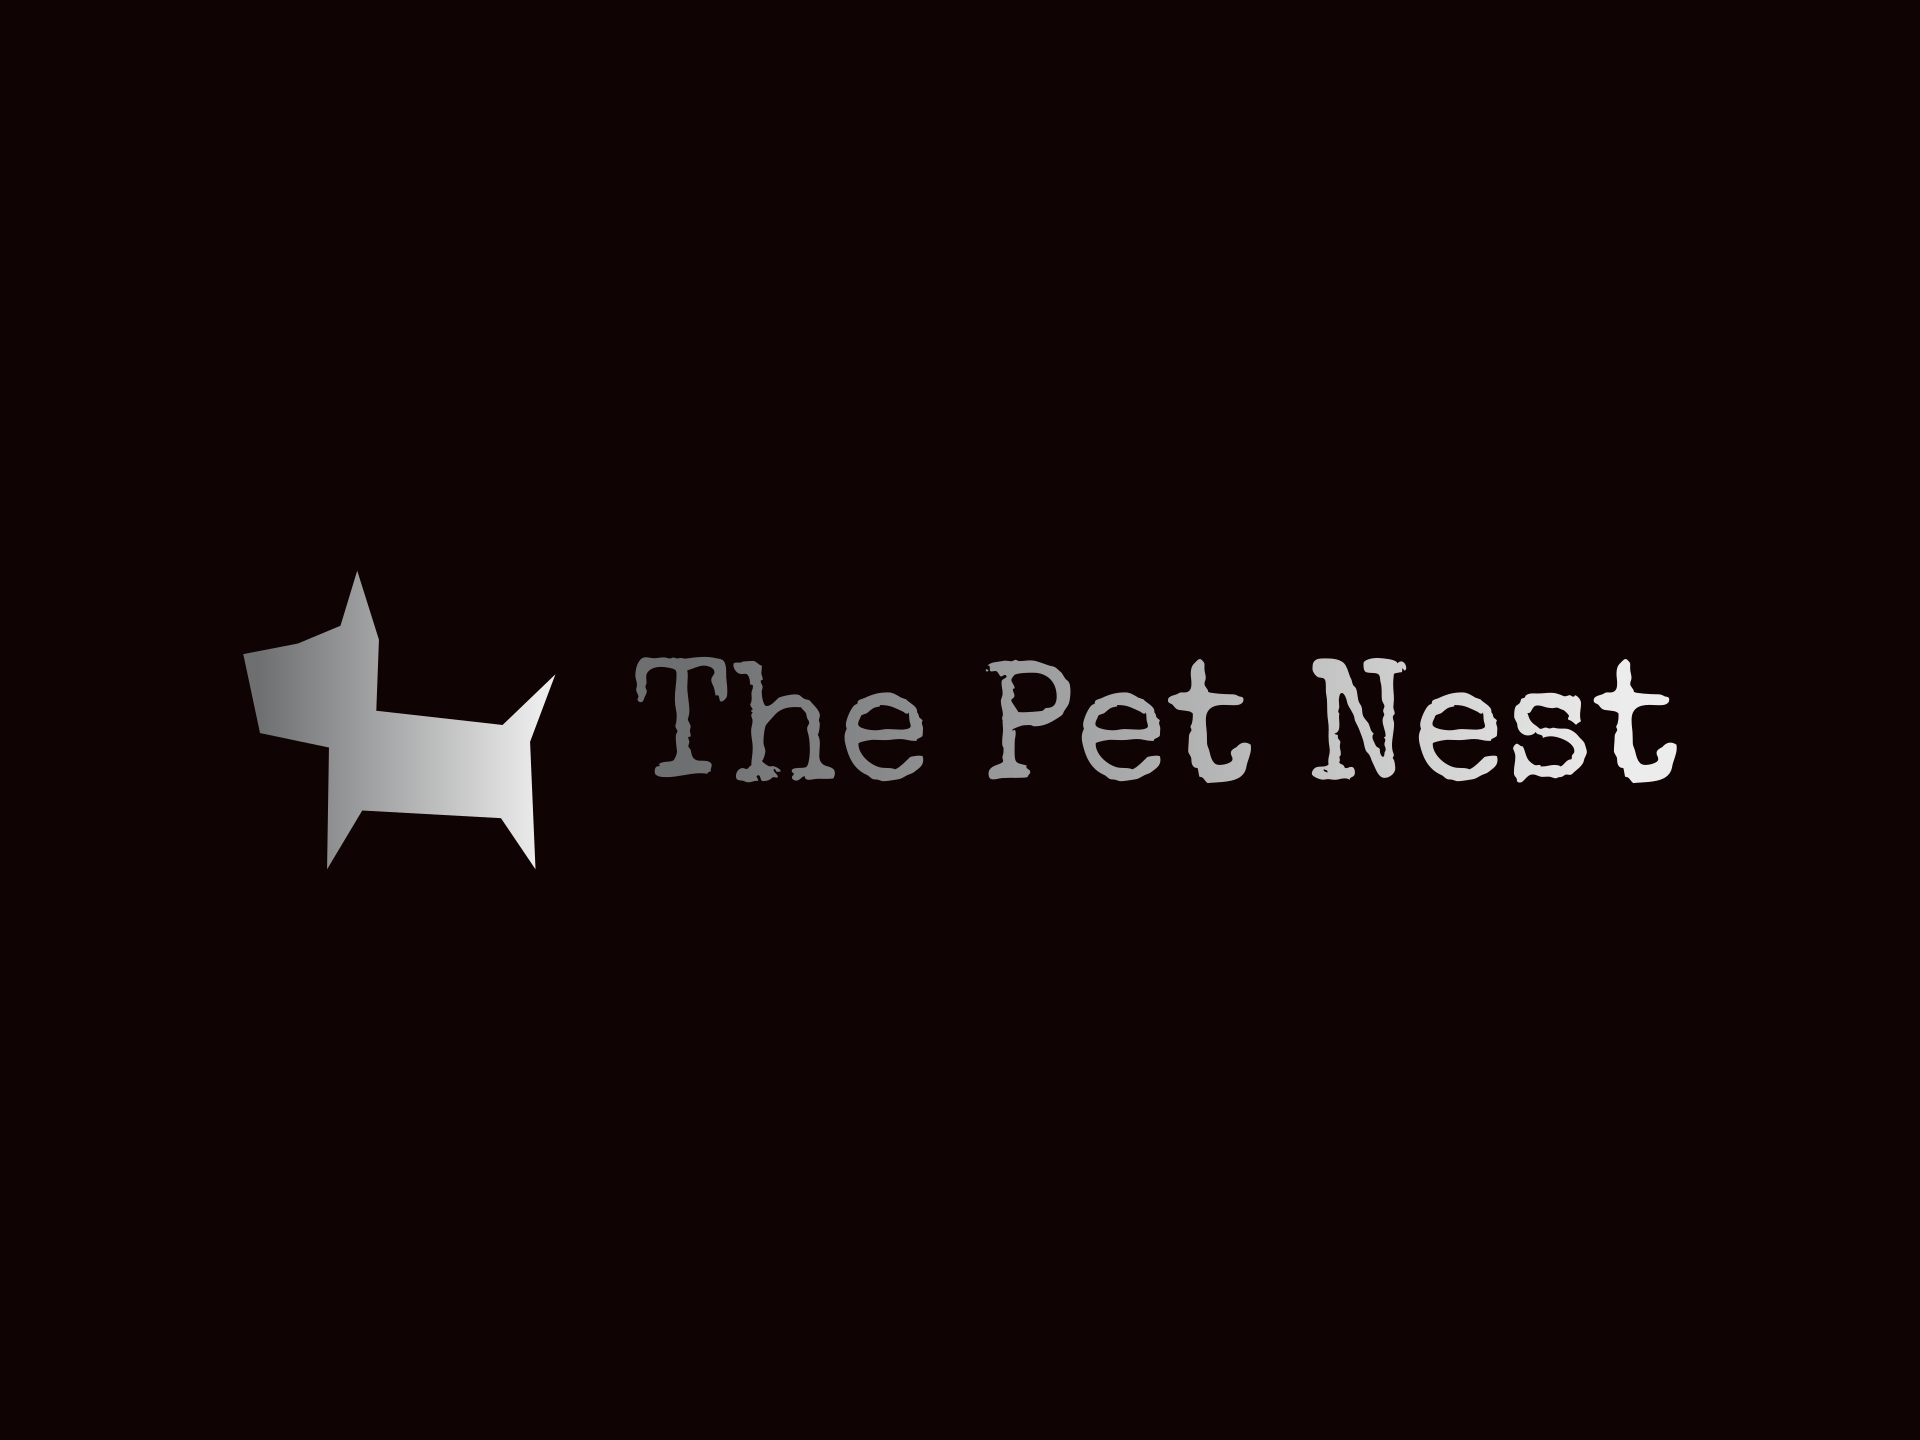 The Pet Nest